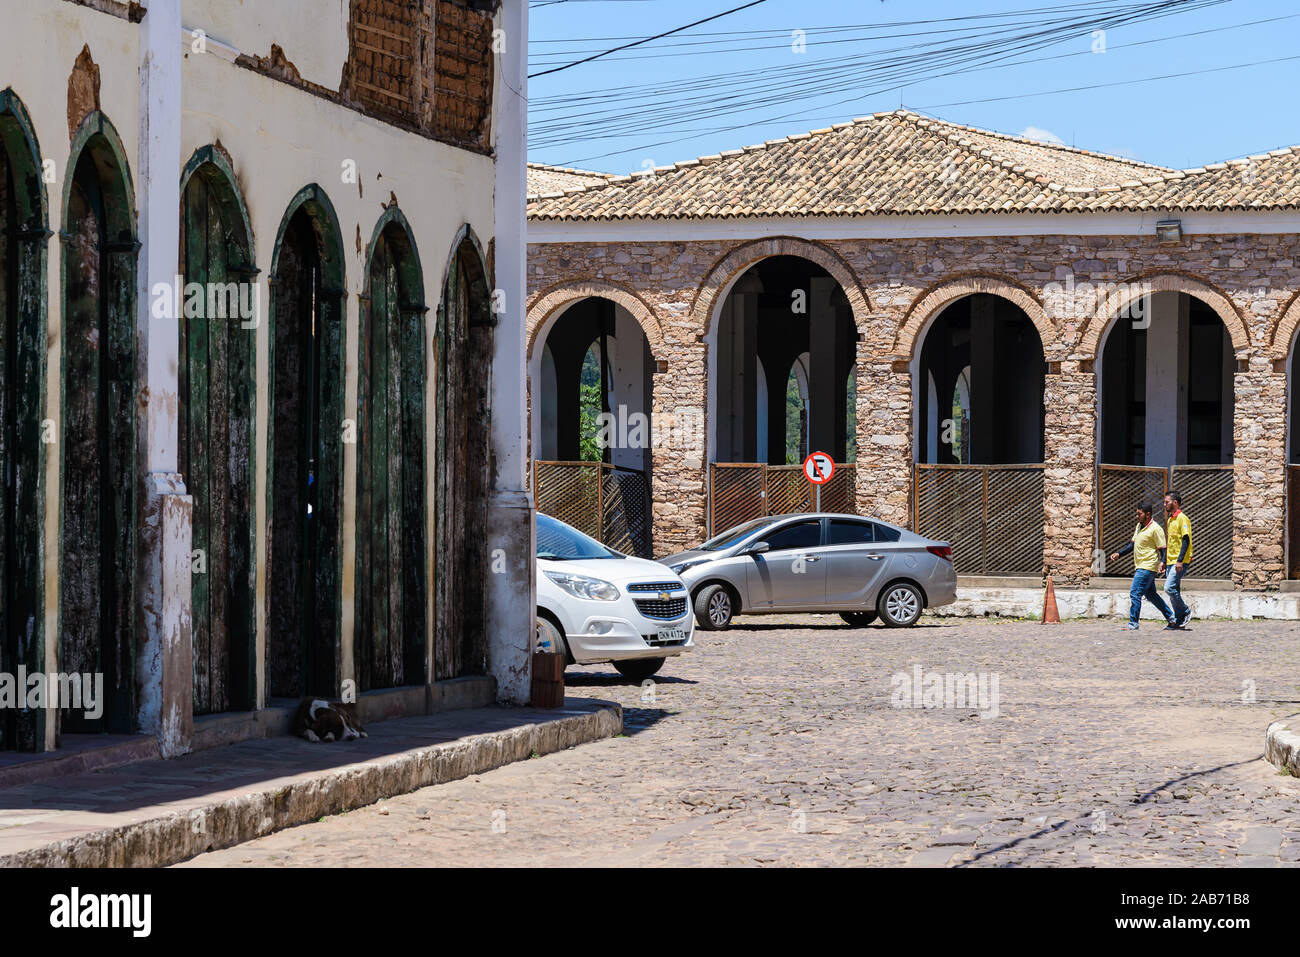 Les rues et les bâtiments dans une petite ville de Lençois, Bahia, Brésil. Banque D'Images